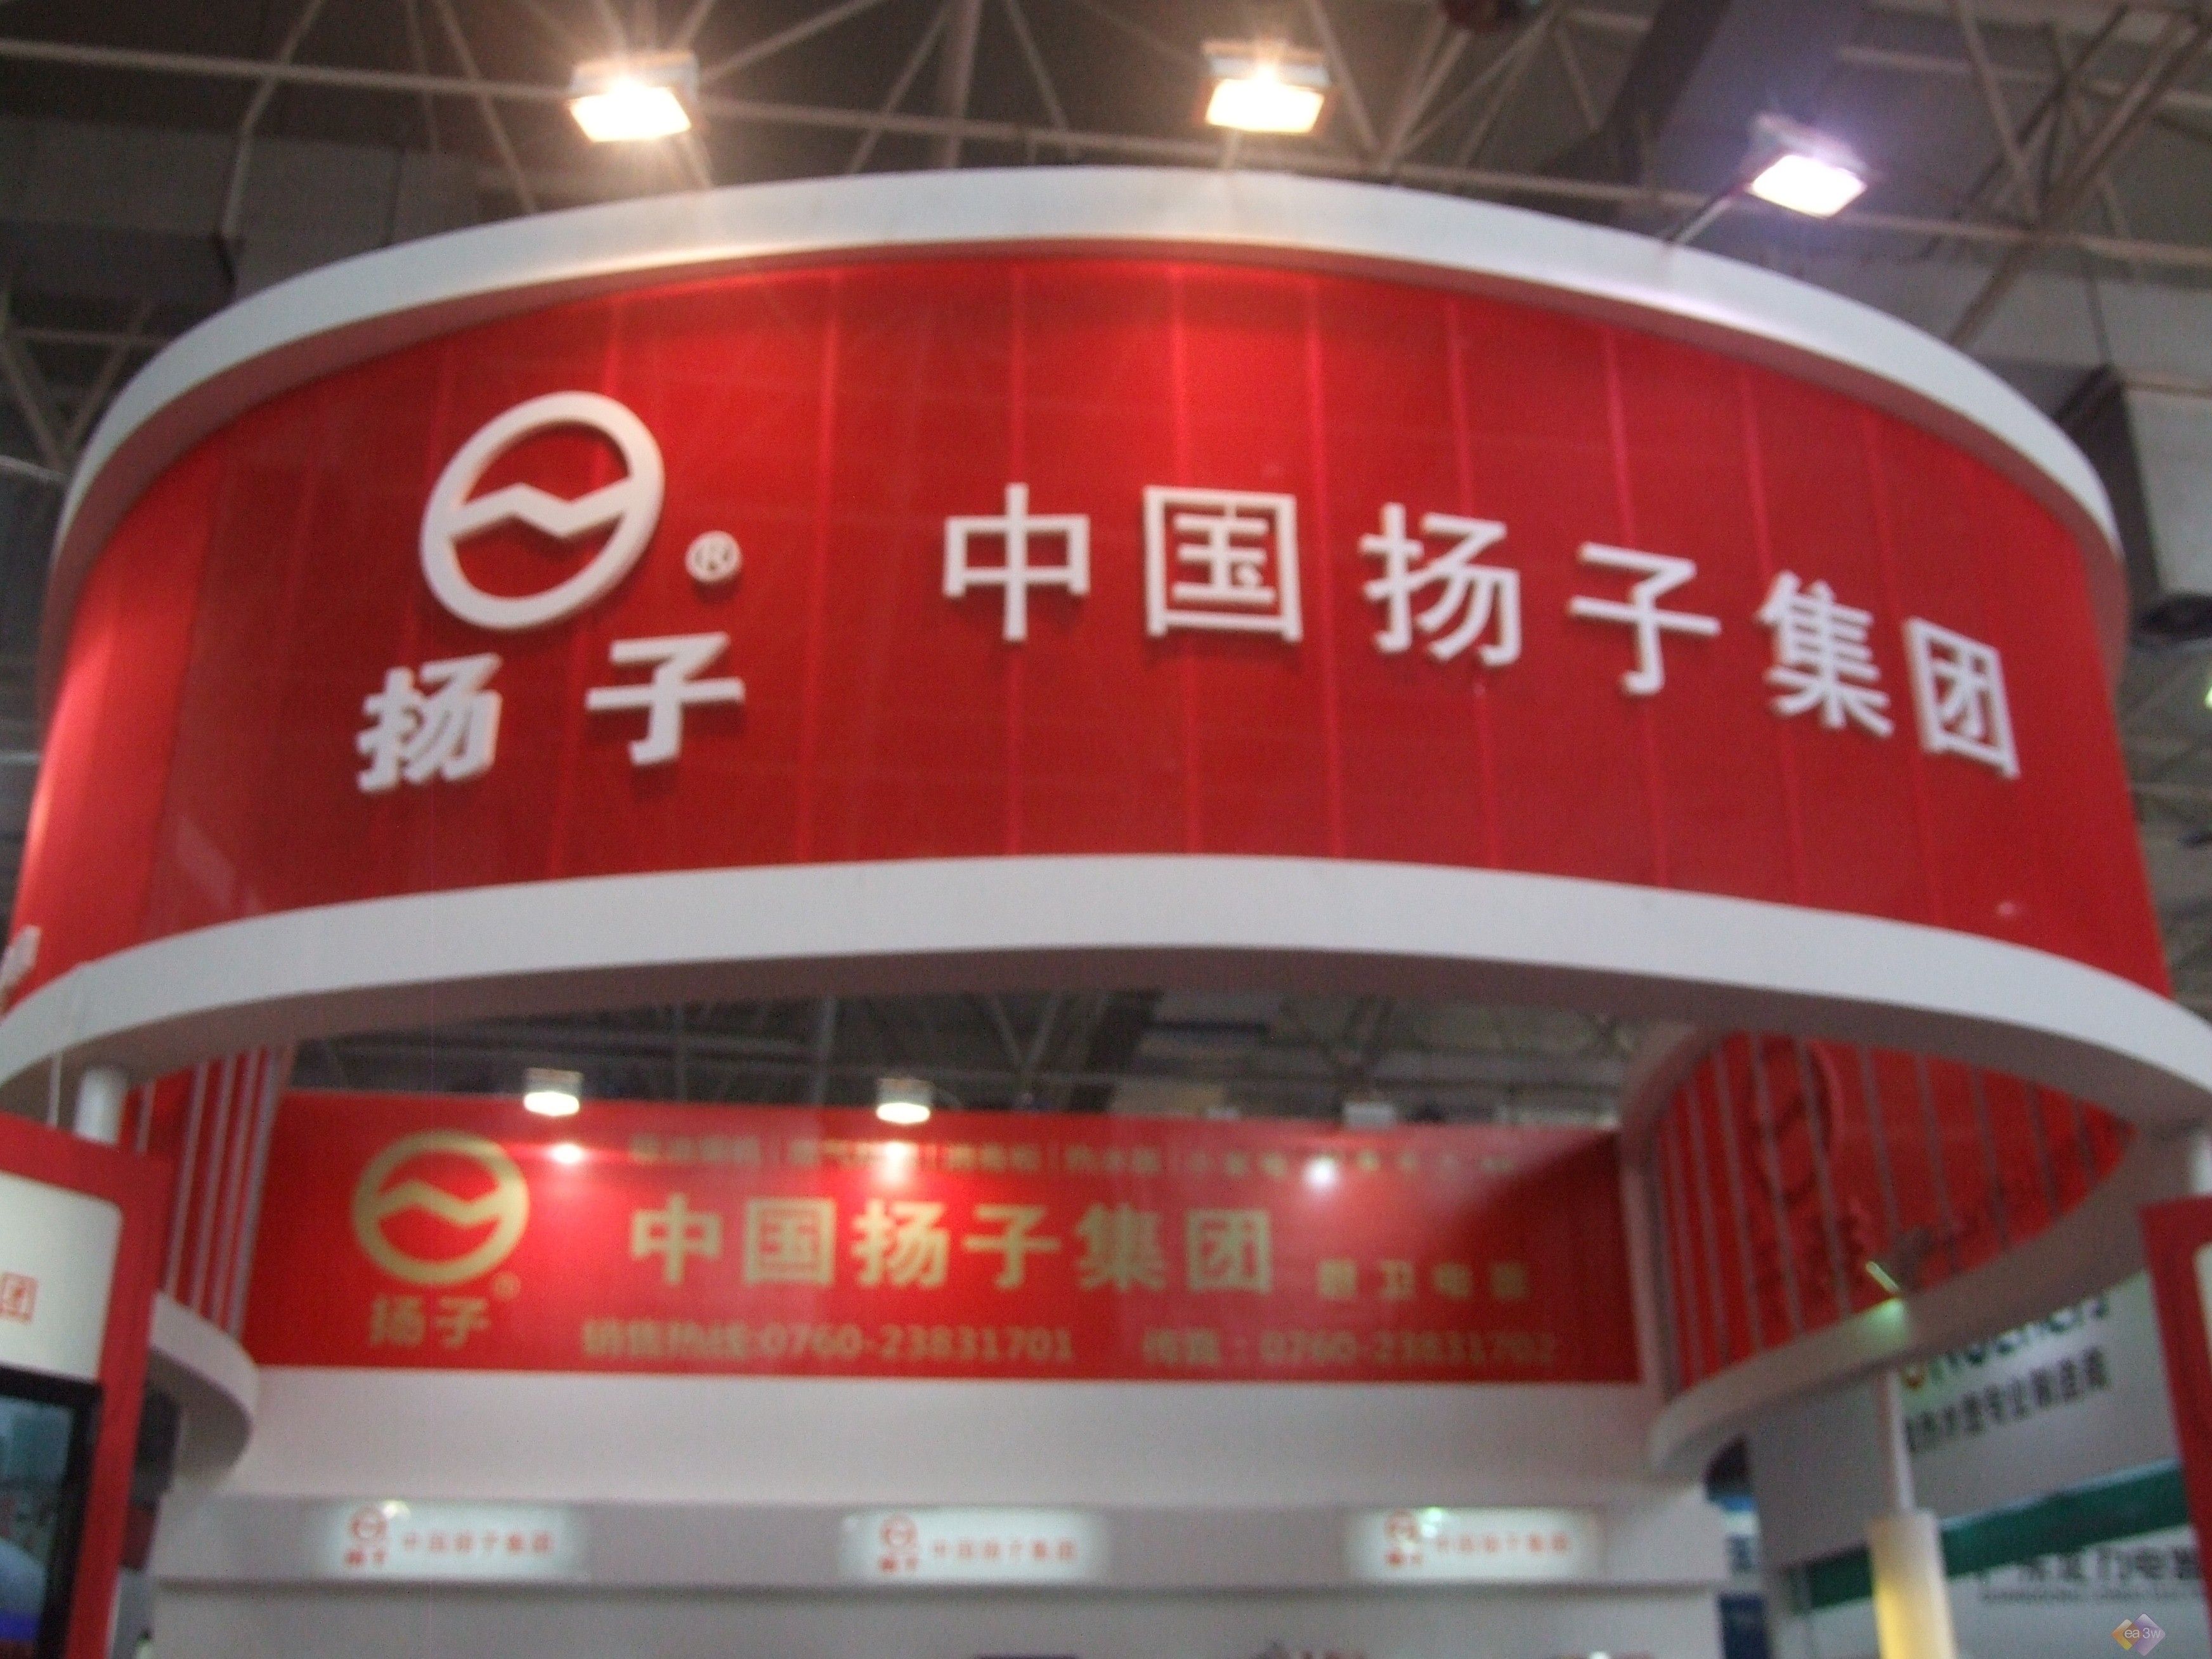     作为重要的参展单位,中国扬子集团携全线厨房产品